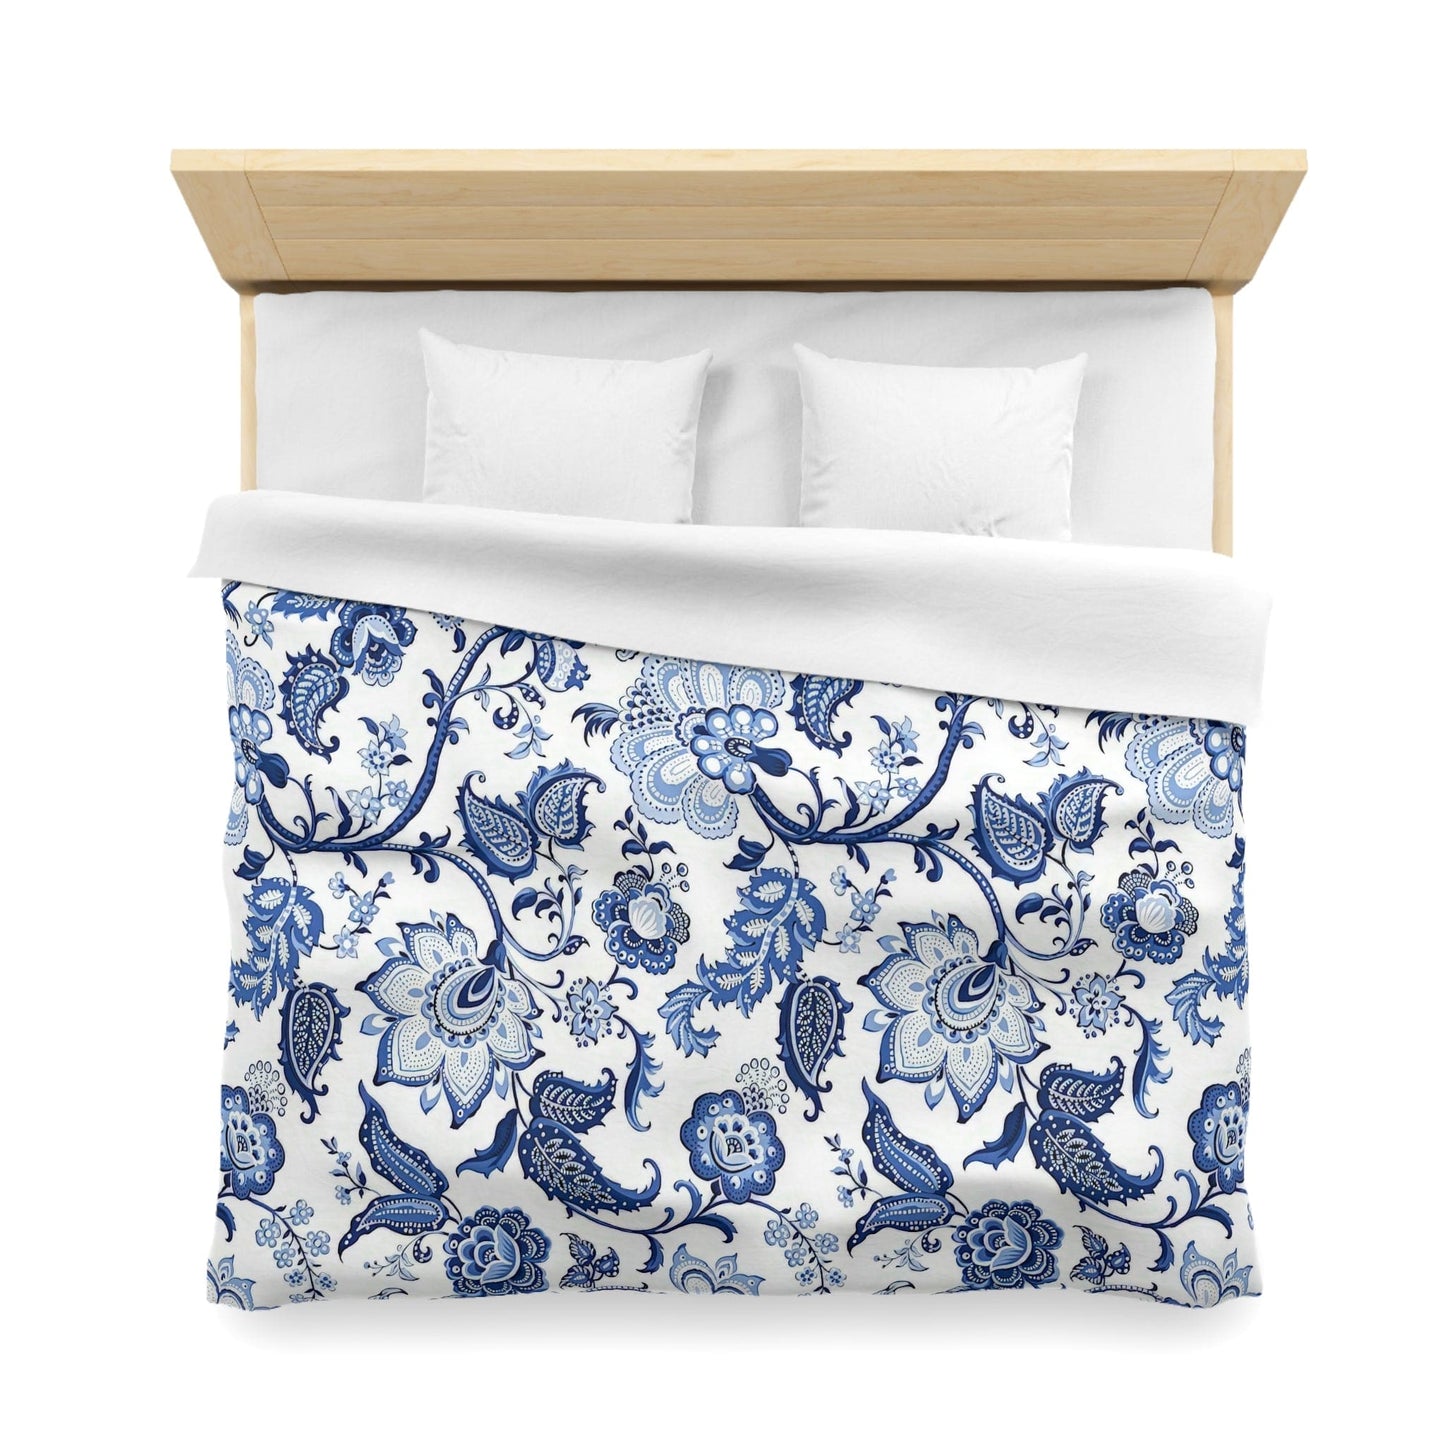 Kate McEnroe New York Blue and White Chinoiserie Jacobean Floral Microfiber Duvet Cover, Grandmillenial Bedroom Decor Duvet Covers